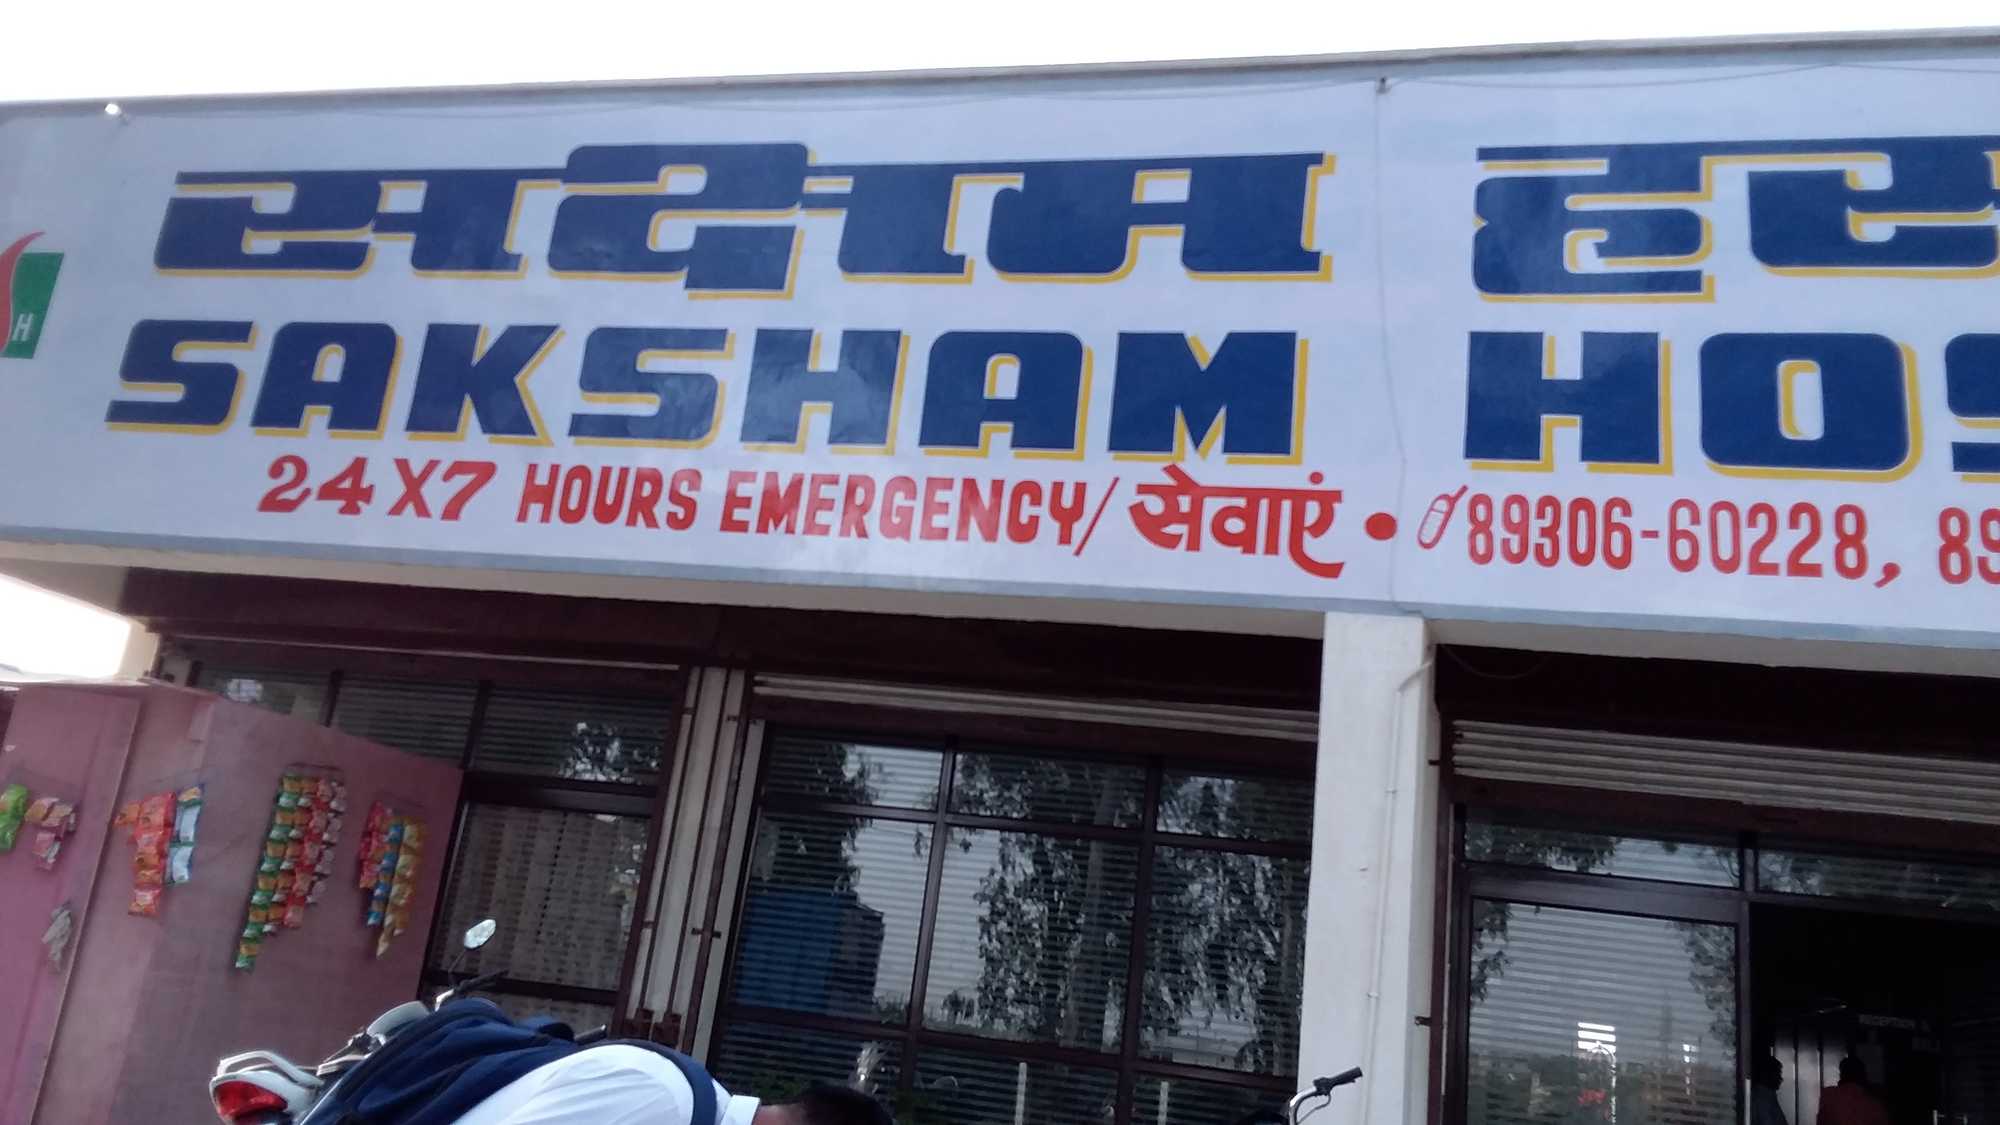 Saksham Hospital|Hospitals|Medical Services